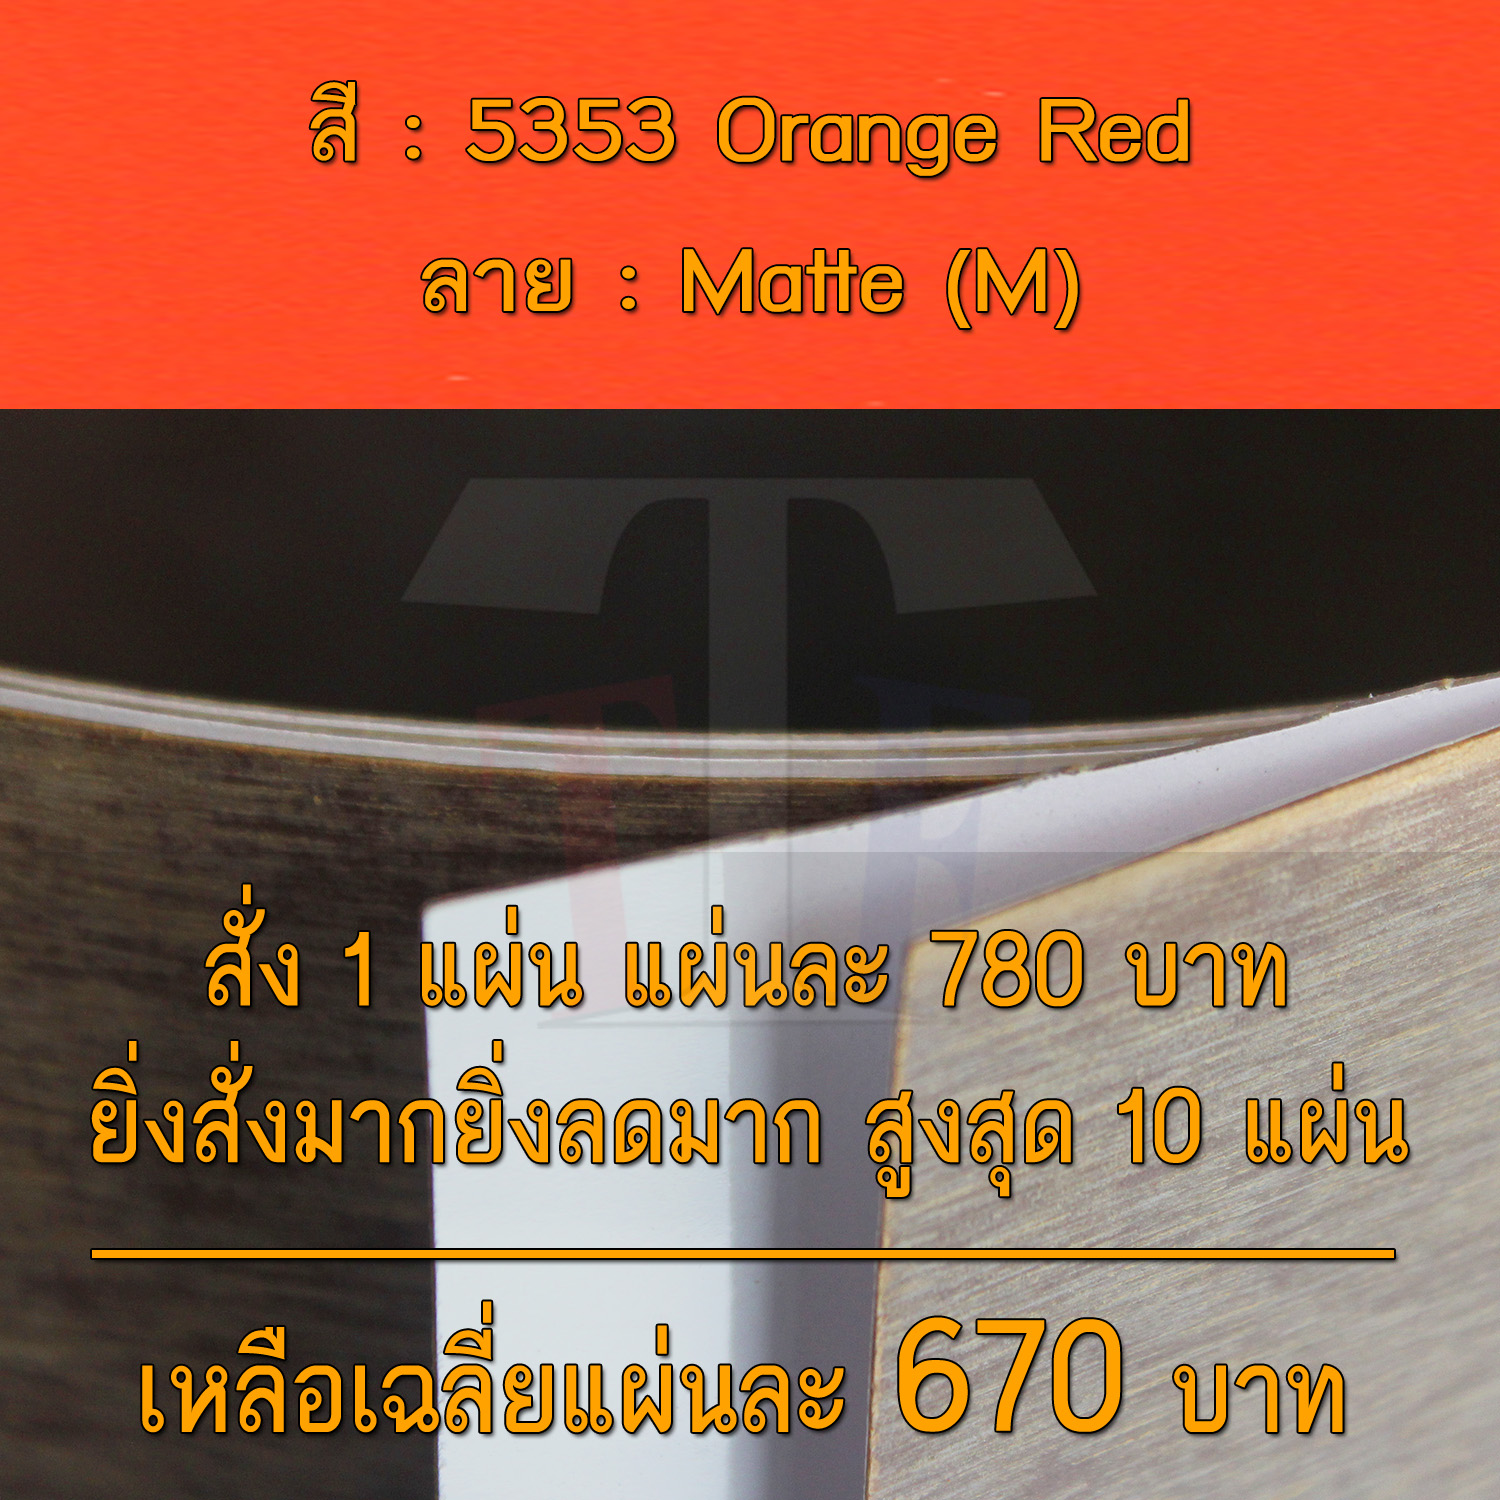 แผ่นโฟเมก้า แผ่นลามิเนต ยี่ห้อ TD Board สีส้ม รหัส 5353 Orange Red พื้นผิวลาย Matte (M) ขนาด 1220 x 2440 มม. หนา 0.70 มม. ใช้สำหรับงานตกแต่งภายใน งานปิดผิวเฟอร์นิเจอร์ ผนัง และอื่นๆ เพื่อเพิ่มความสวยงาม formica laminate 5353M